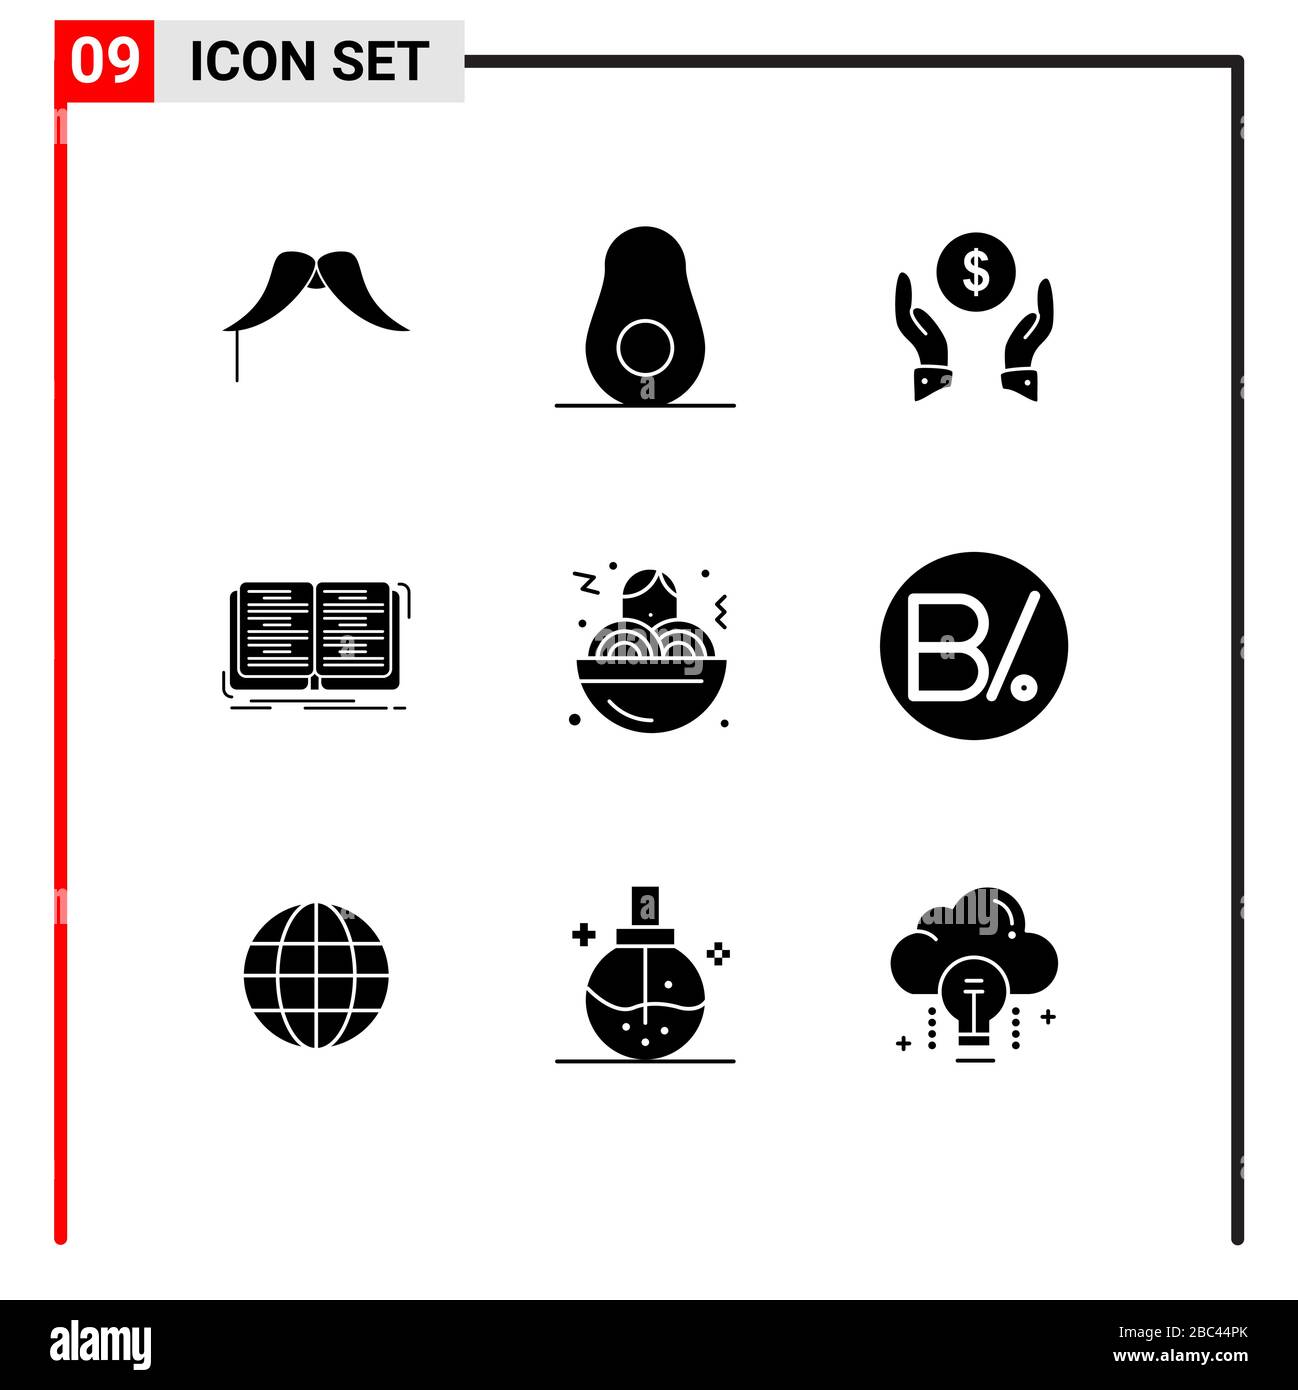 Stock Vector Icon Pack mit 9 Schildern und Symbolen für fast Food, Studie, Versicherung, Lektion, Buch editierbare Vektordesignelemente Stock Vektor